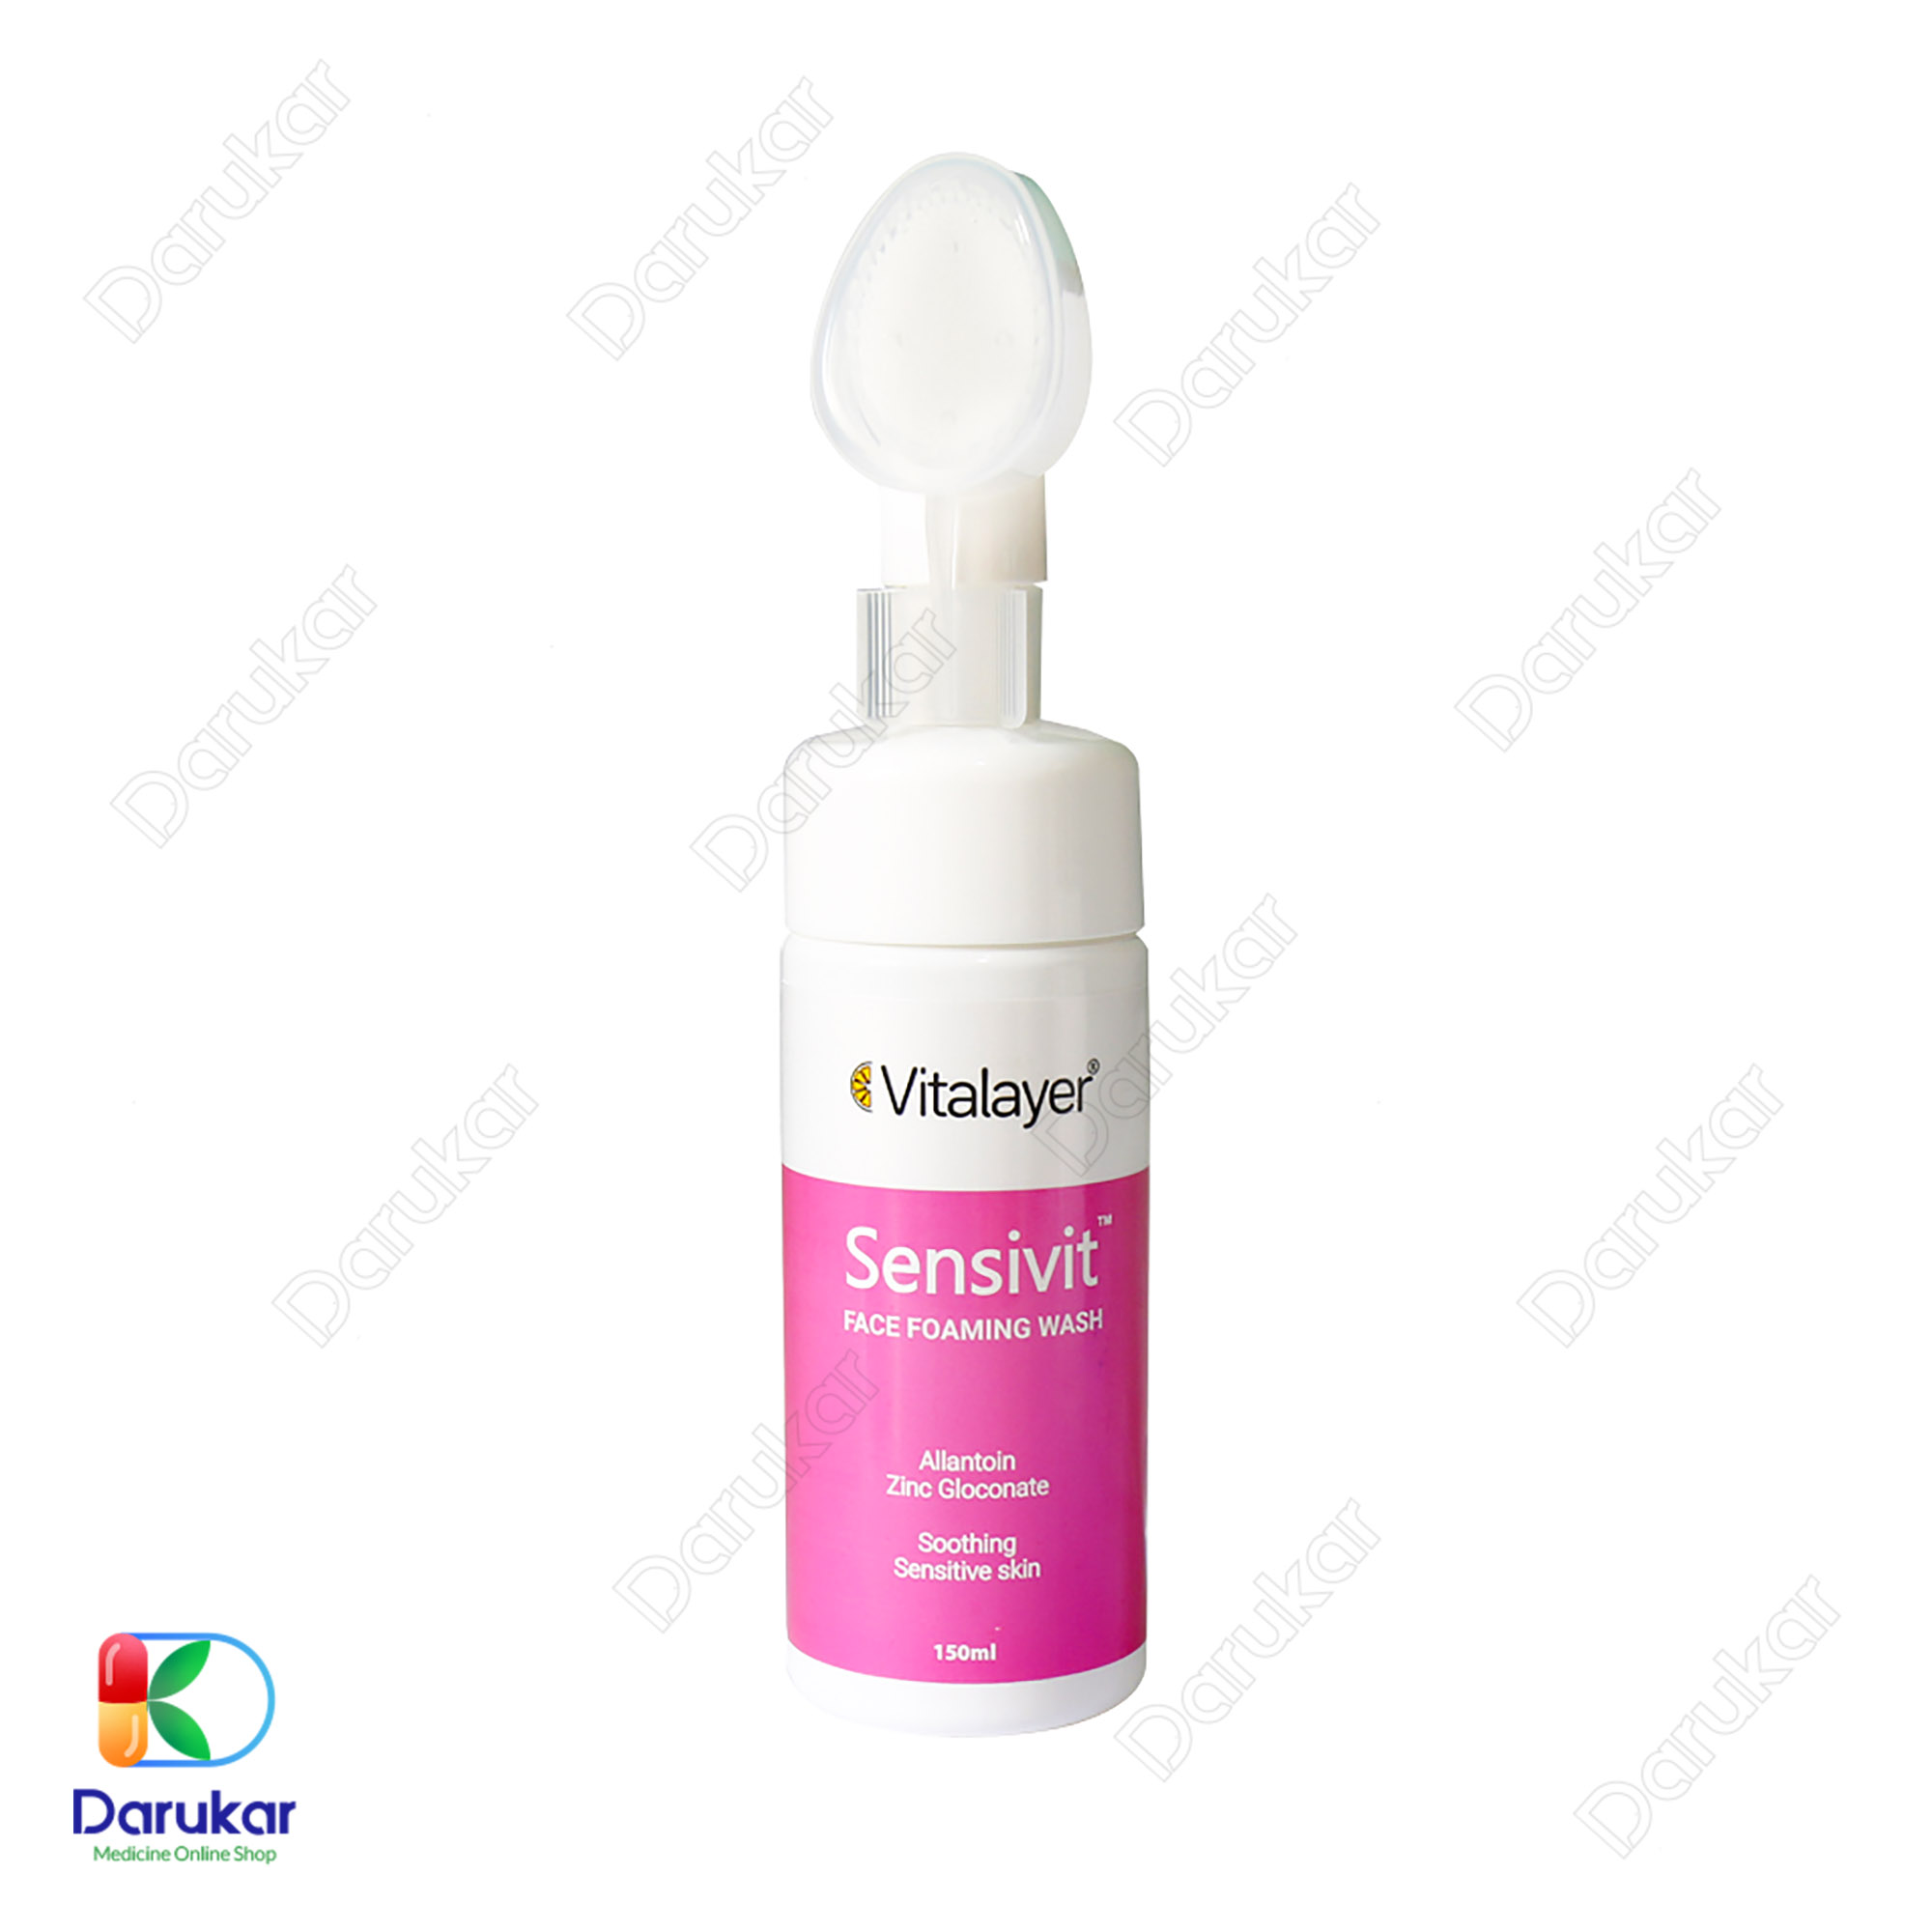 Vitalayer Sensivit Face Foaming Wash 150 ml 1 1